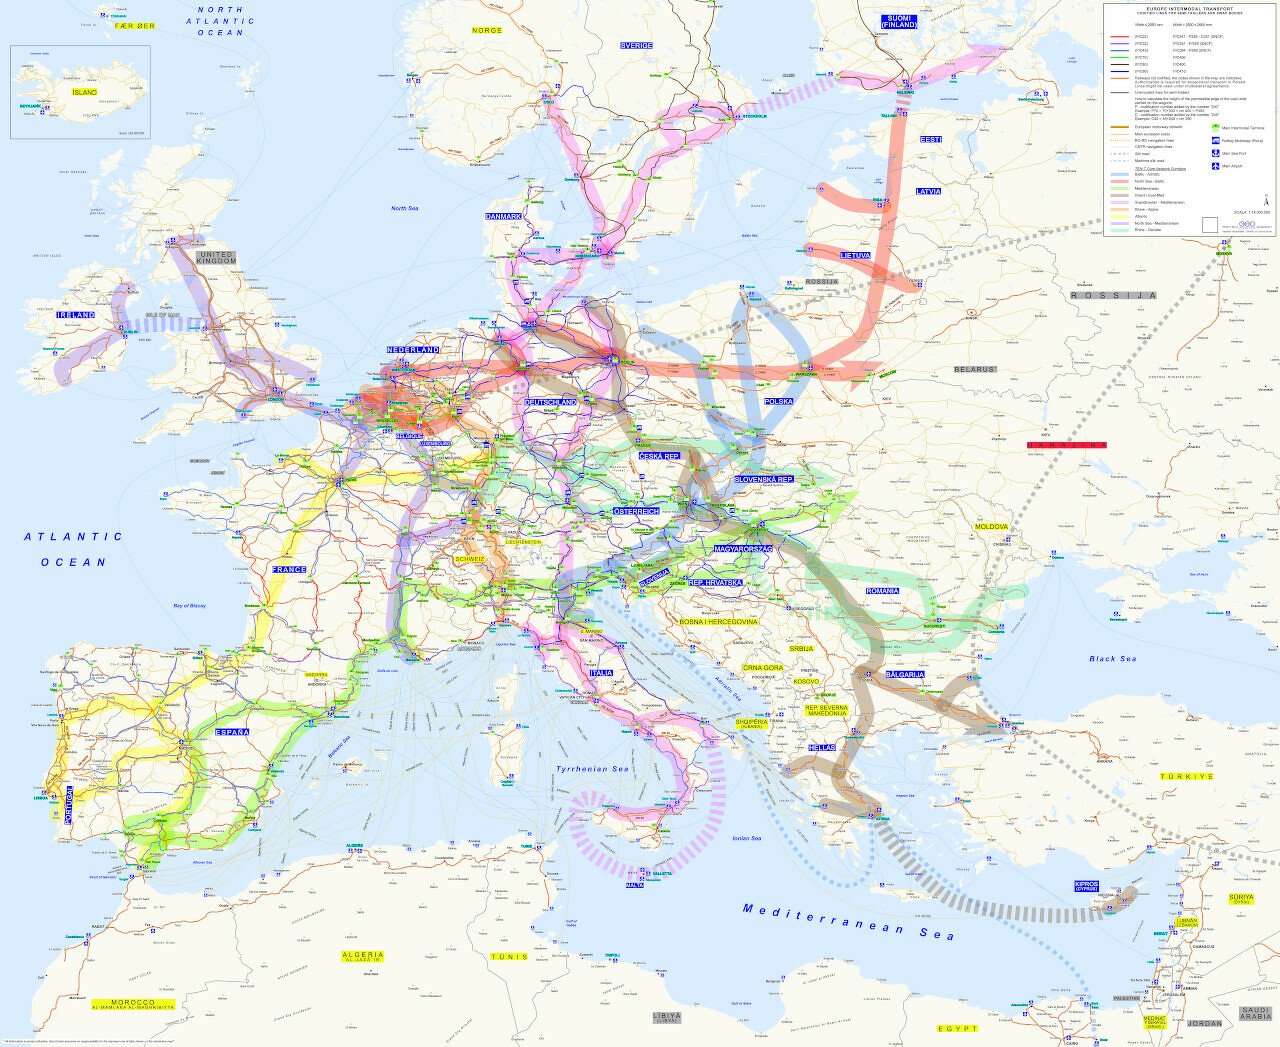 Europe for Intermodal Transport